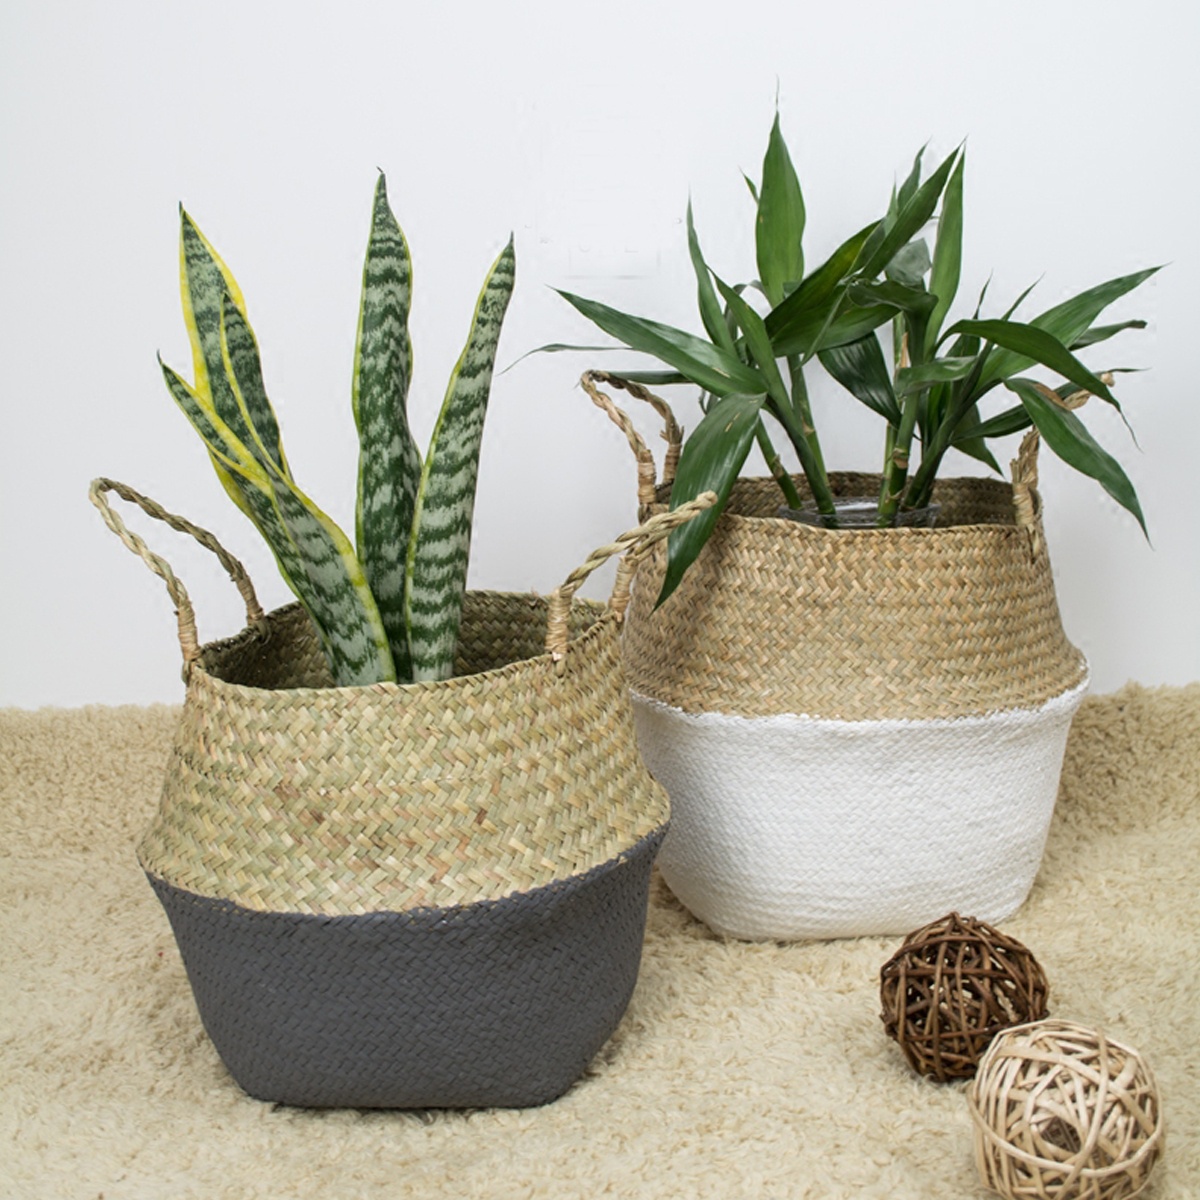 Foldable-Rattan-Straw-Basket-Flower-Pot-Hanging-Wicker-Storage-Baskets-Garden-Accessories-1217819-3